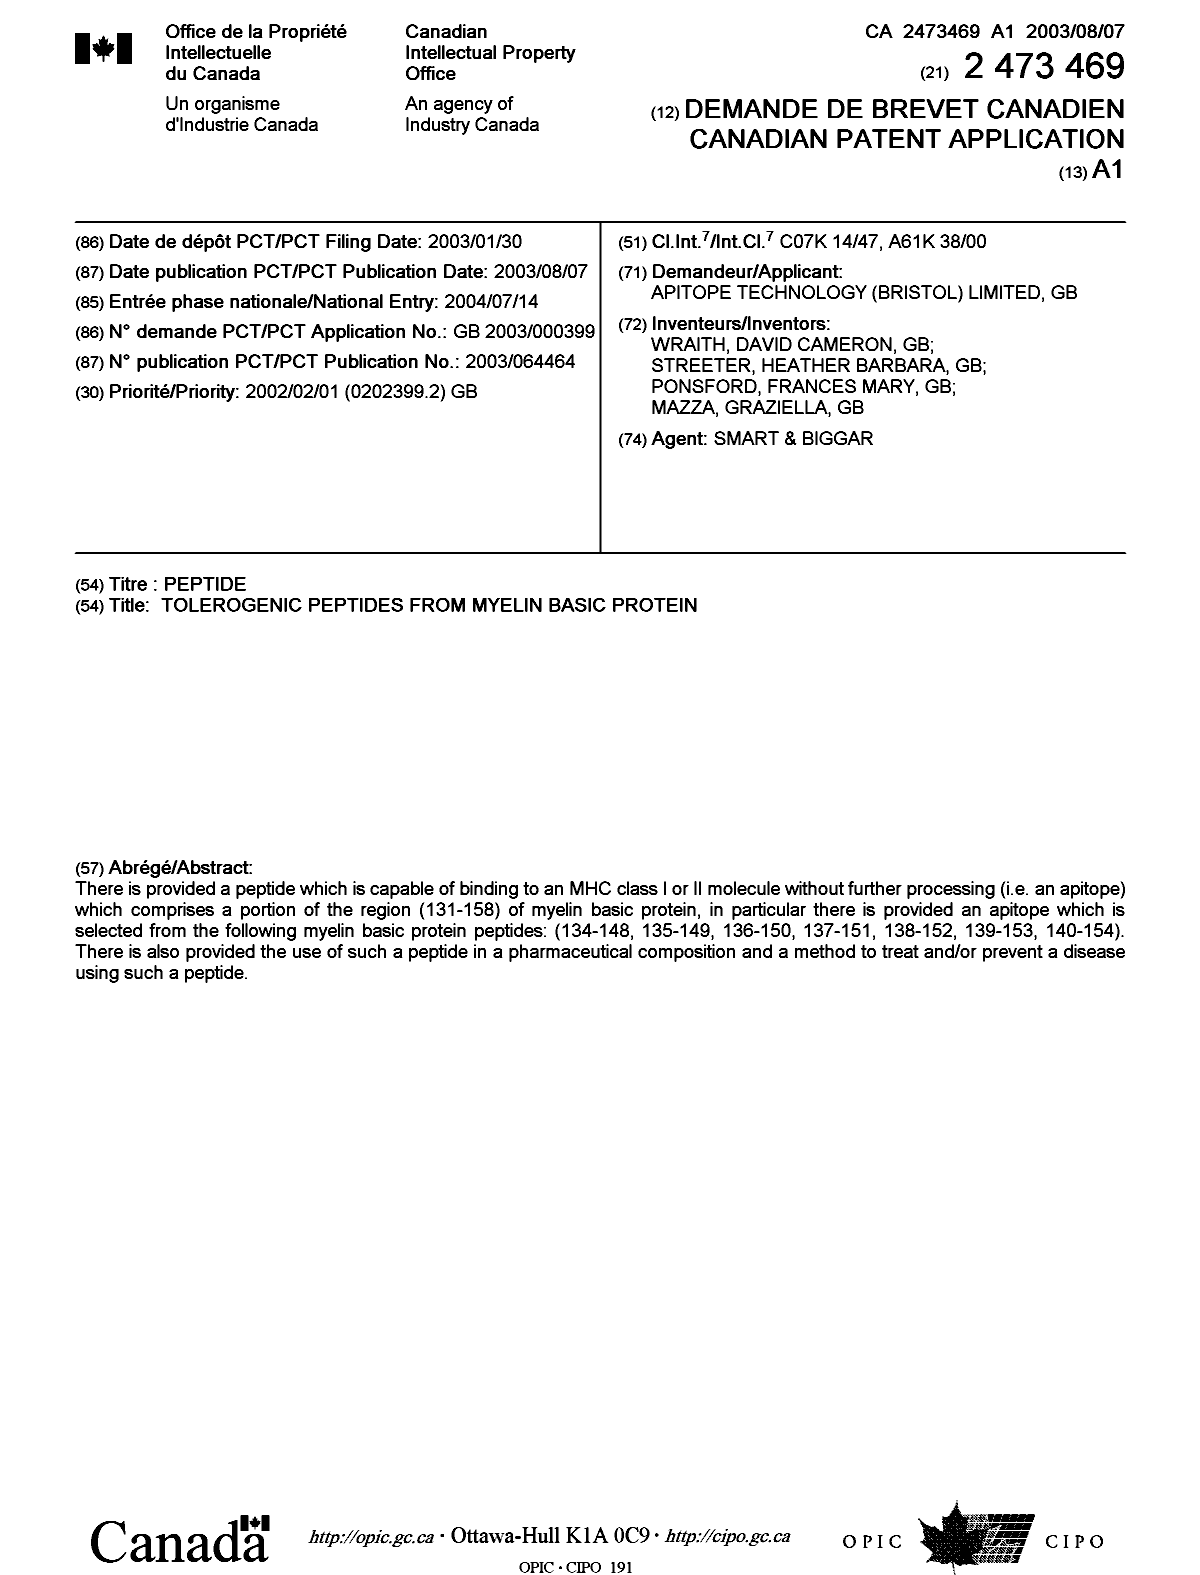 Document de brevet canadien 2473469. Page couverture 20040915. Image 1 de 1